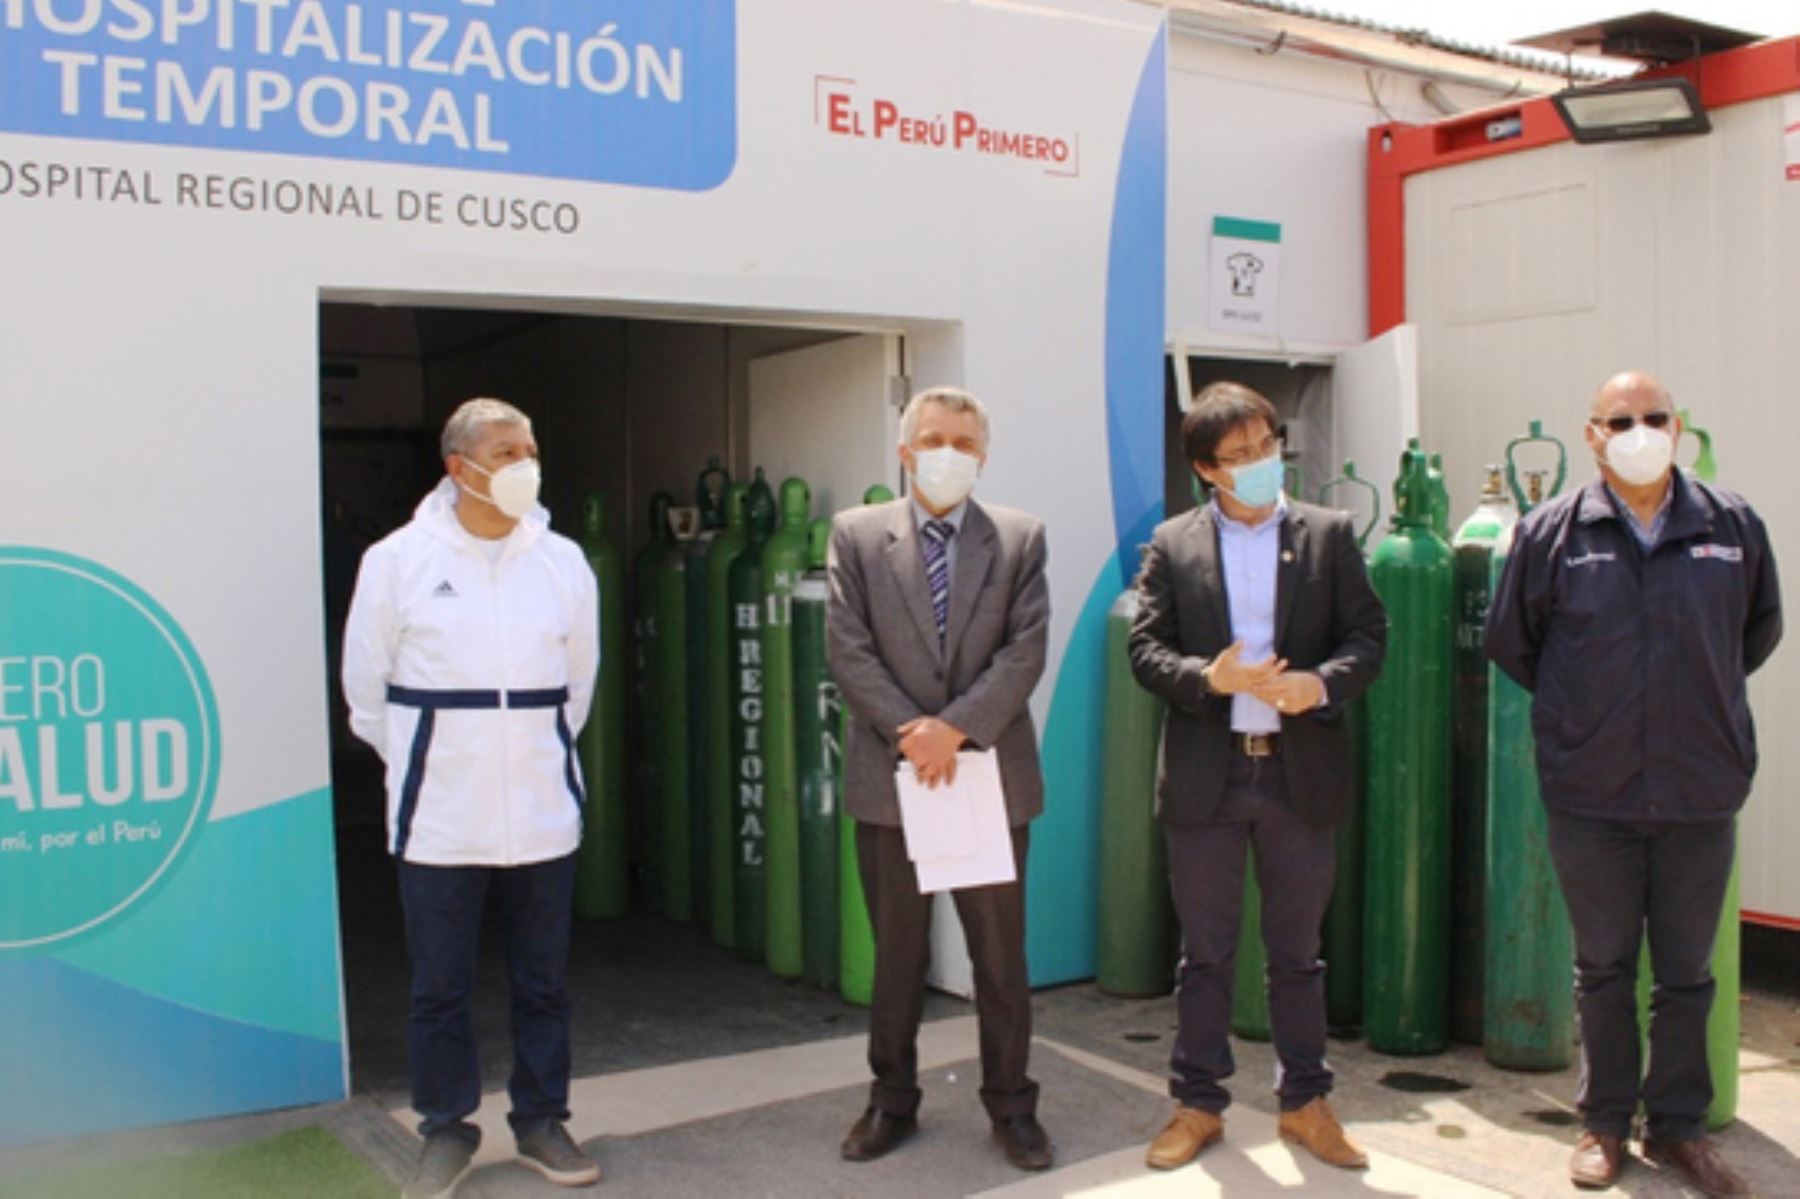 El ambiente temporal de hospitalización para pacientes covid-19 en el Cusco está ubicado cerca al hospital Regional. Foto: ANDINA/Minsa